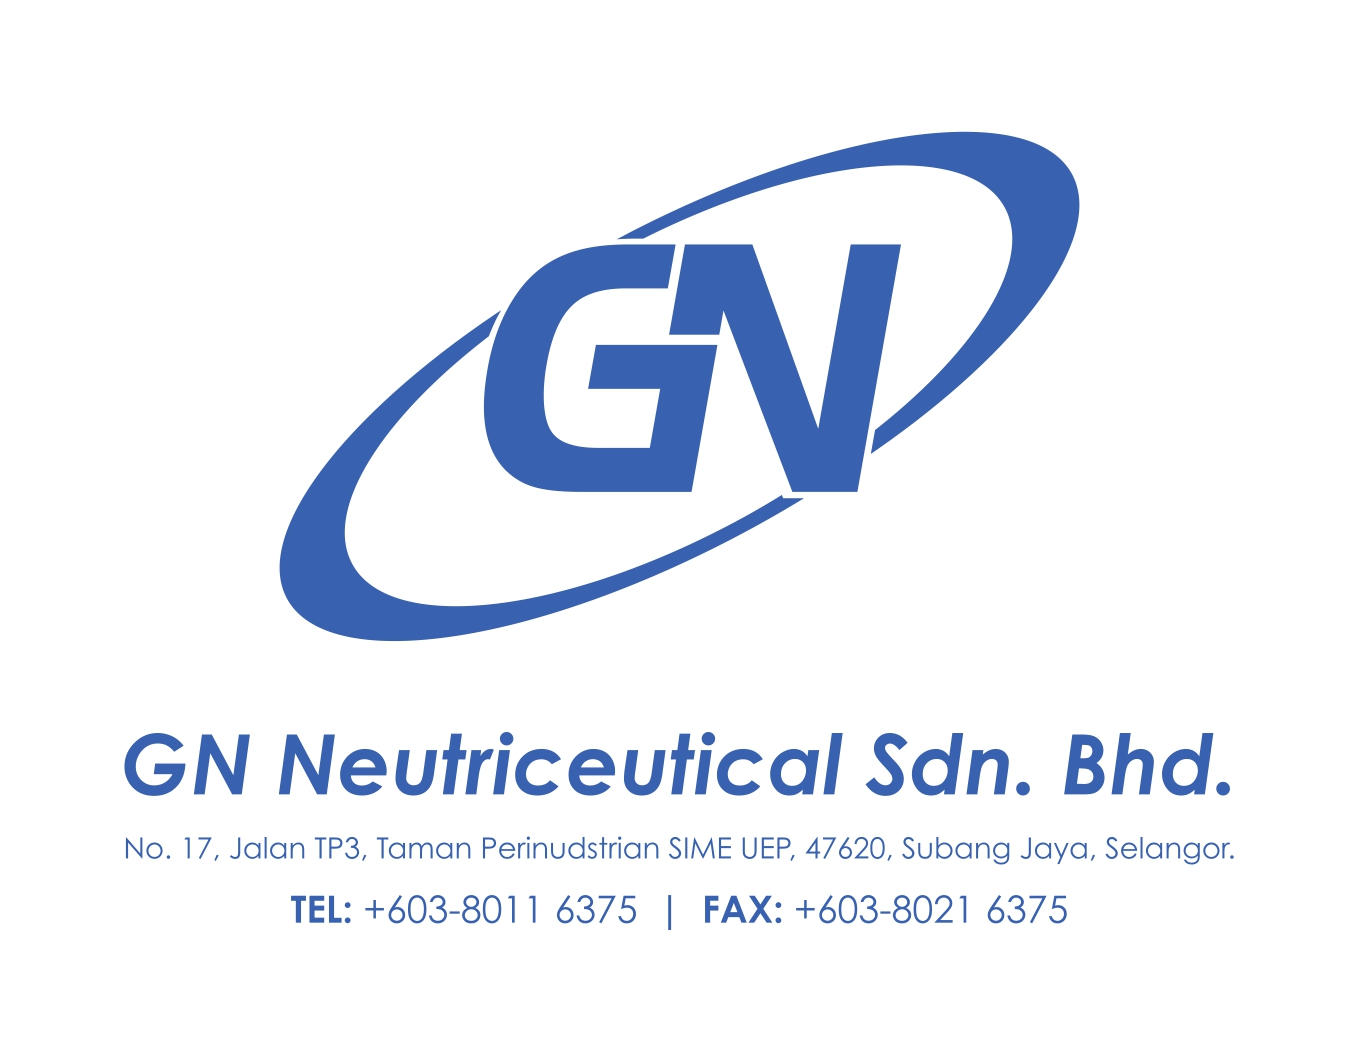 GN NEUTRICEUTICALS SDN. BHD.